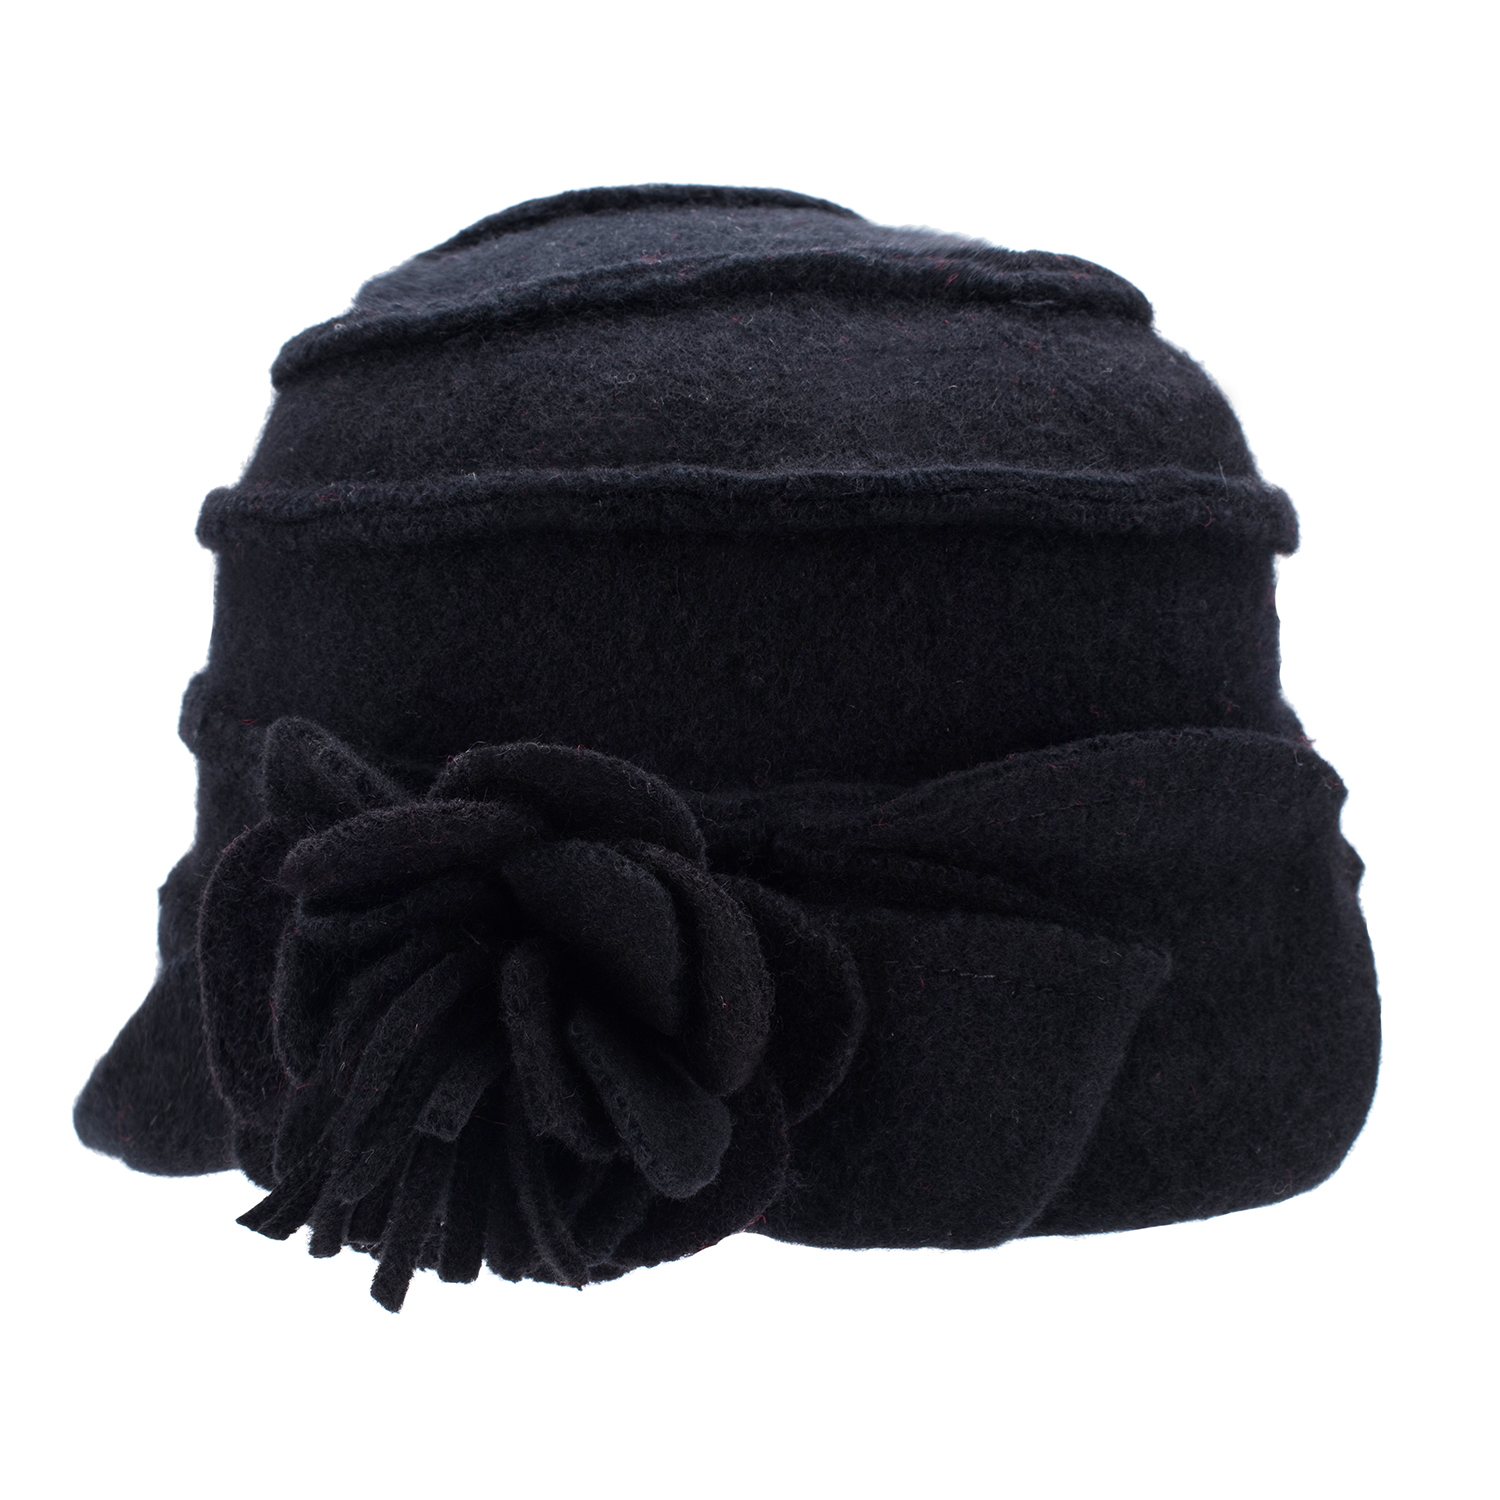 Zarif 1920'ler Stil Bayanlar Şapkalar Kış Bere Beanie Şapkaları Kadınlar için Kova Cloche Cap% 100 Haşlanmış Yün Sıcak Şapkalar A376